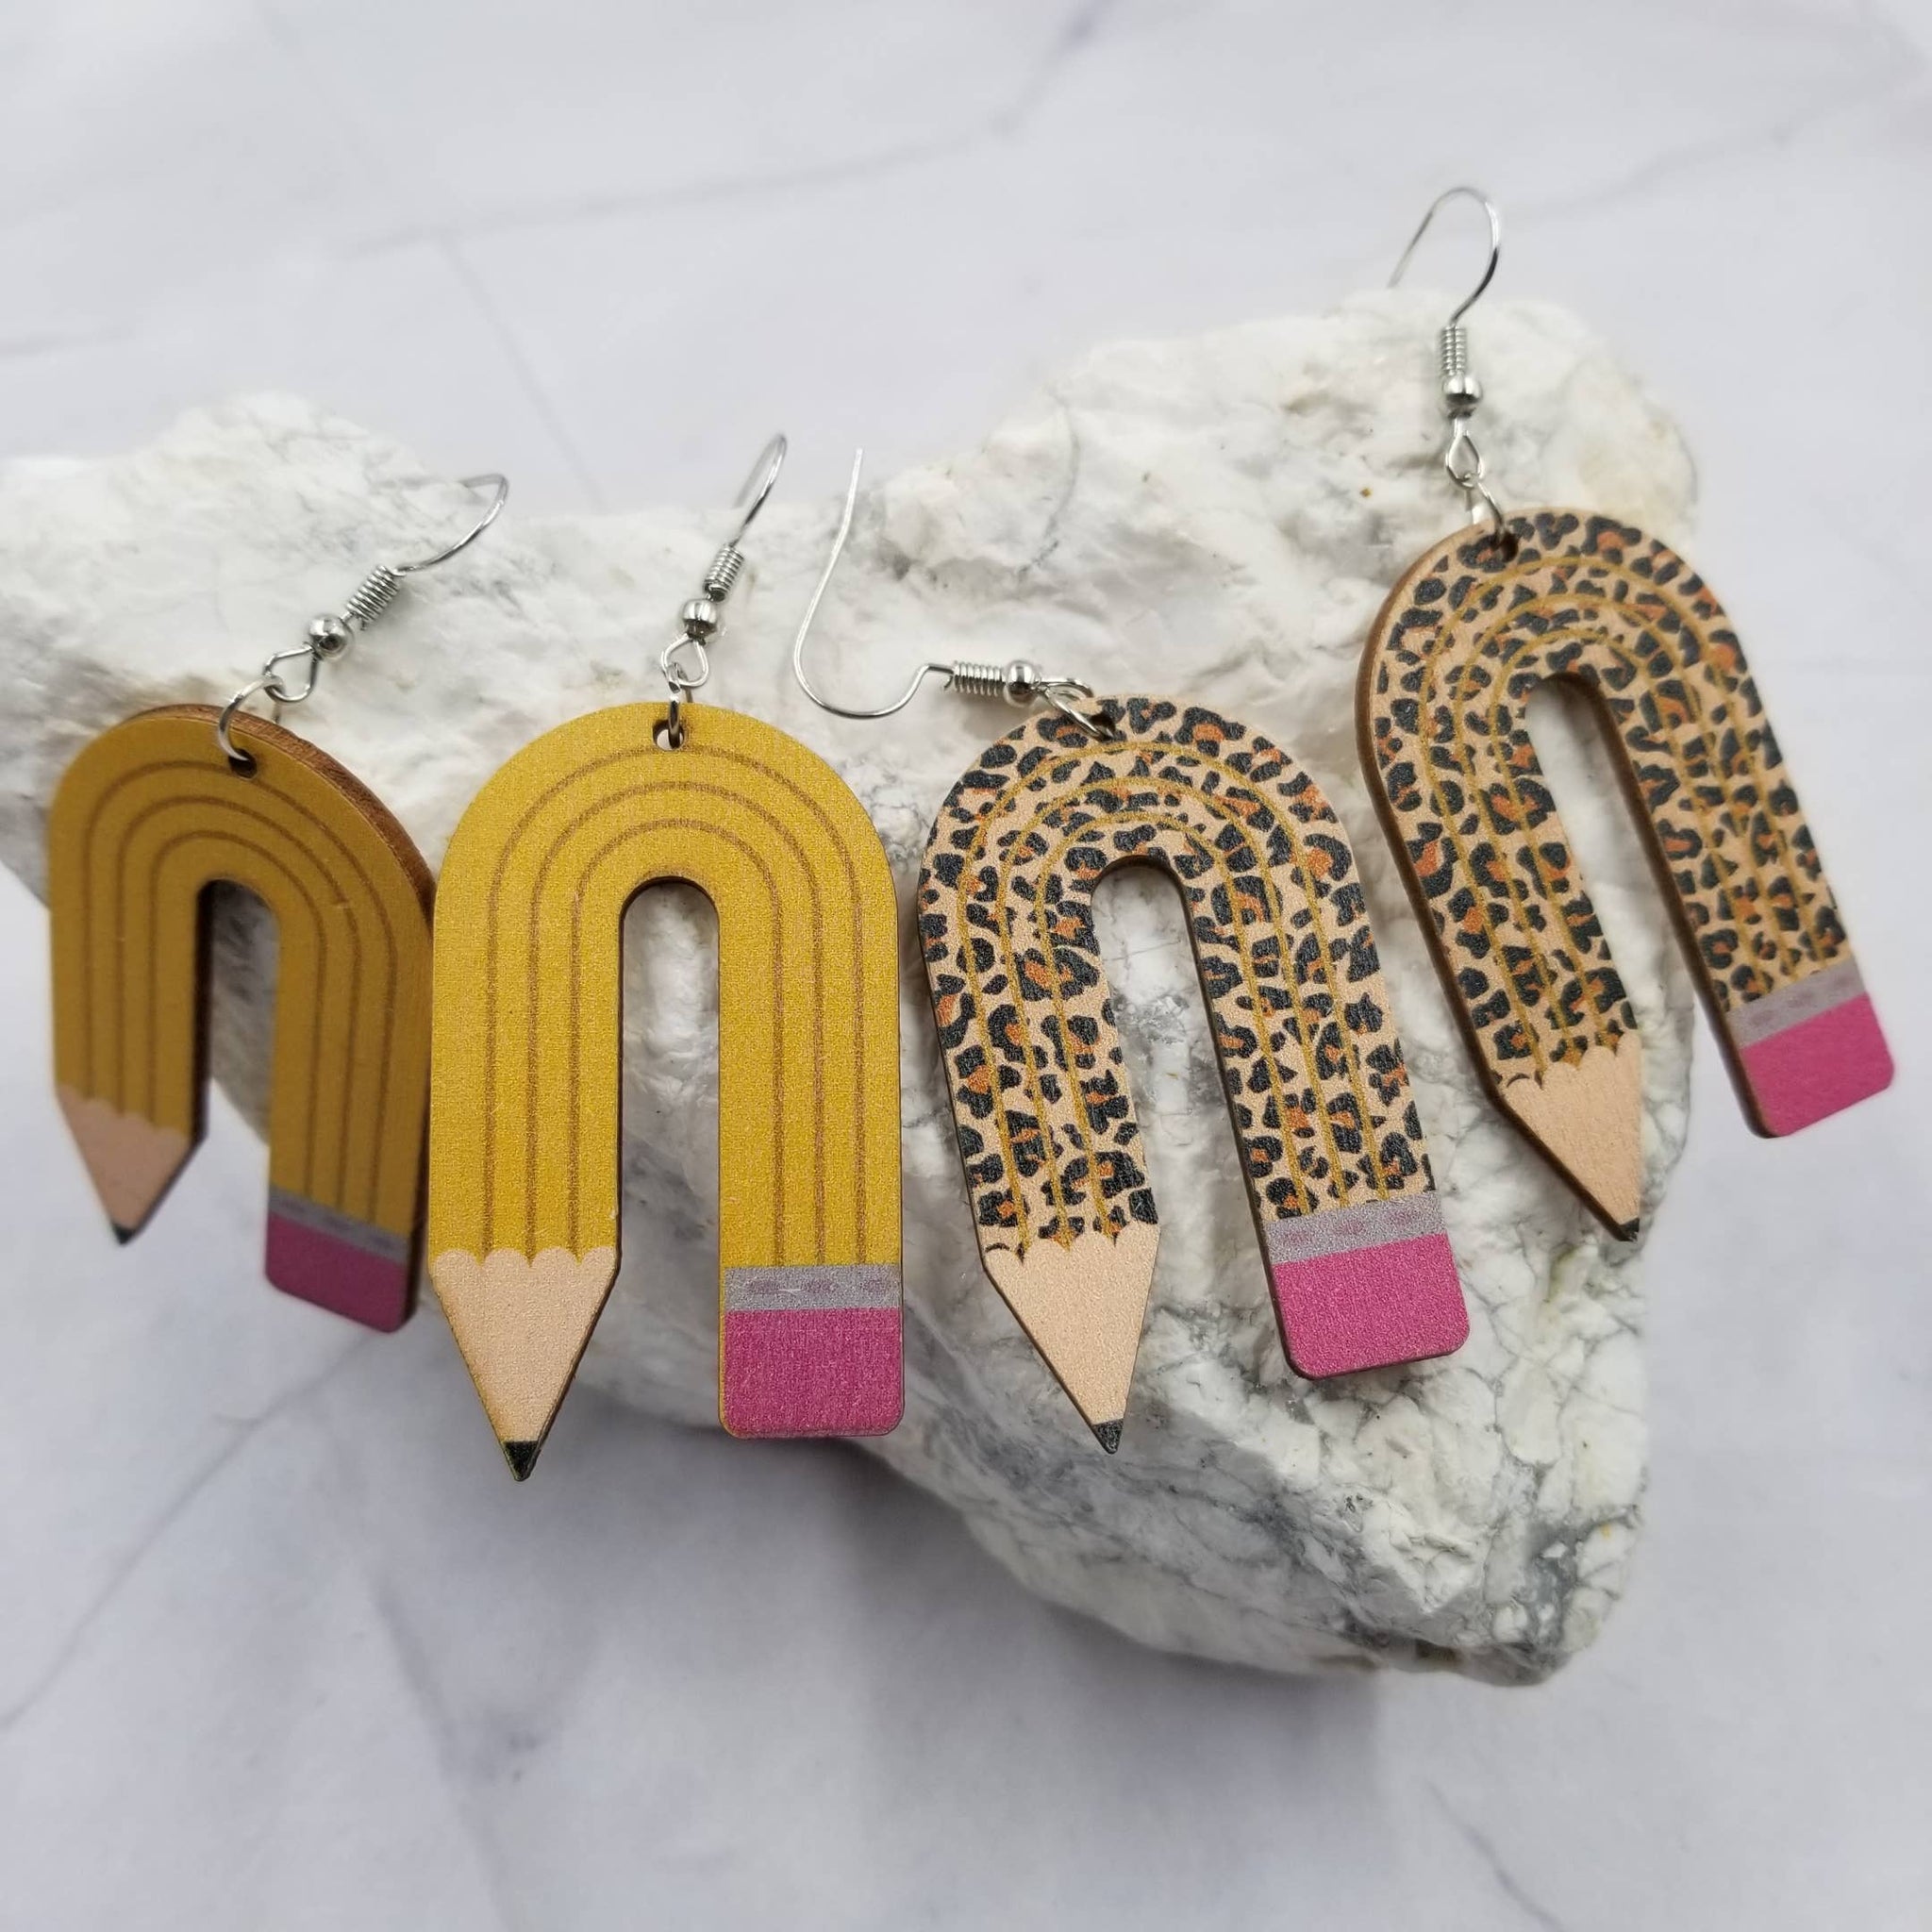 The Pretty Jewellery - Handmade Wood Leopard Teacher Pencil Earrings